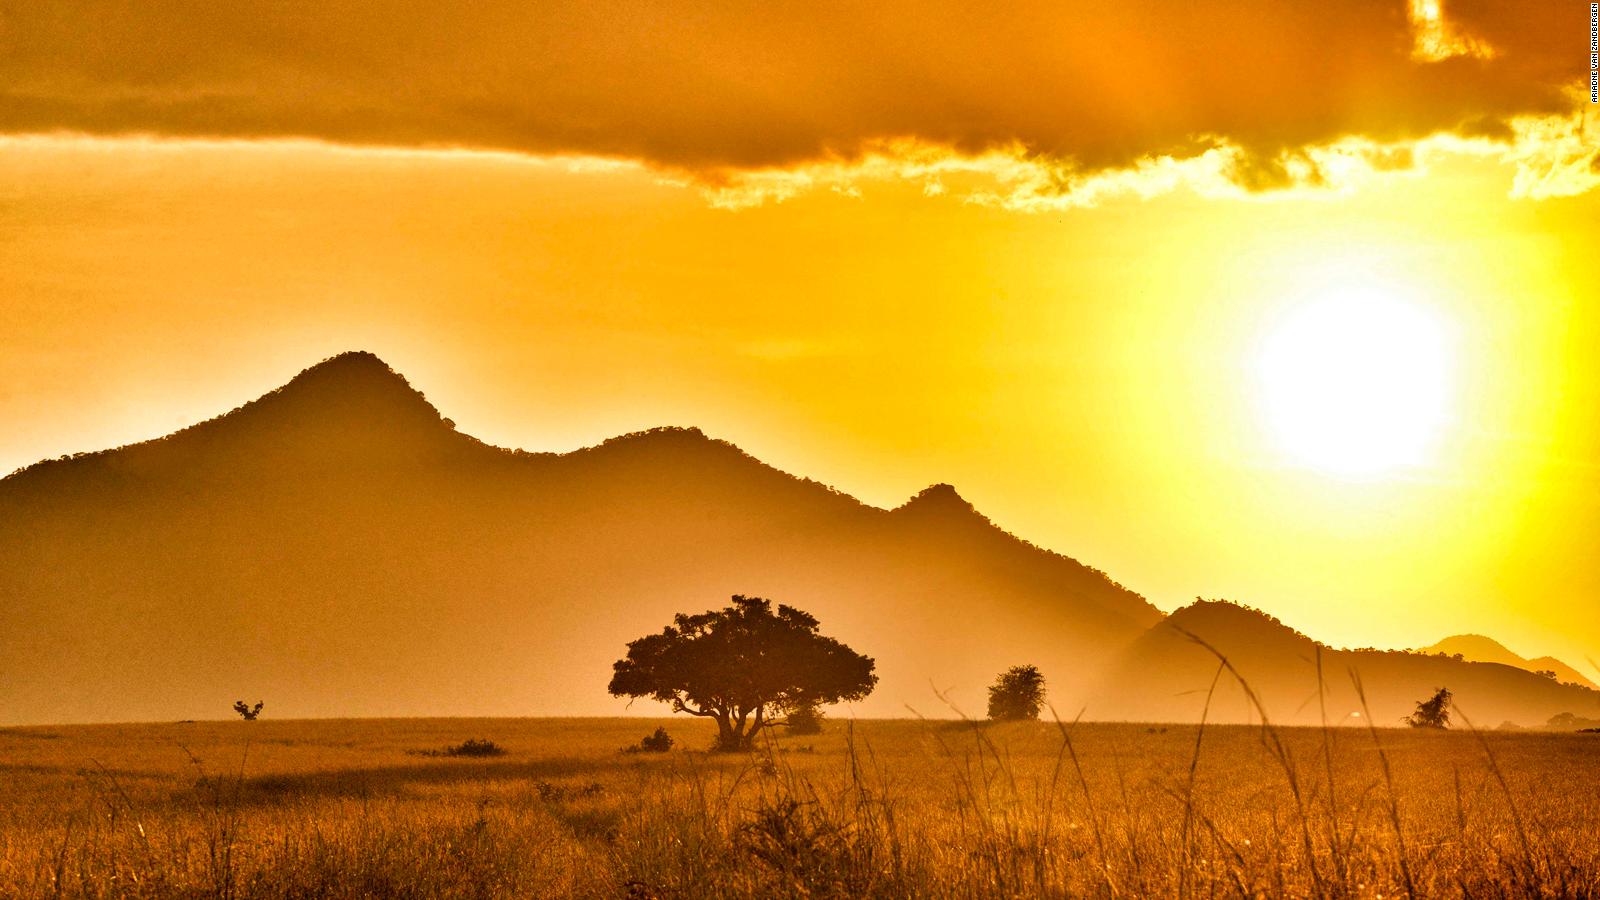 African 8 best parks to view wildlife | CNN Travel